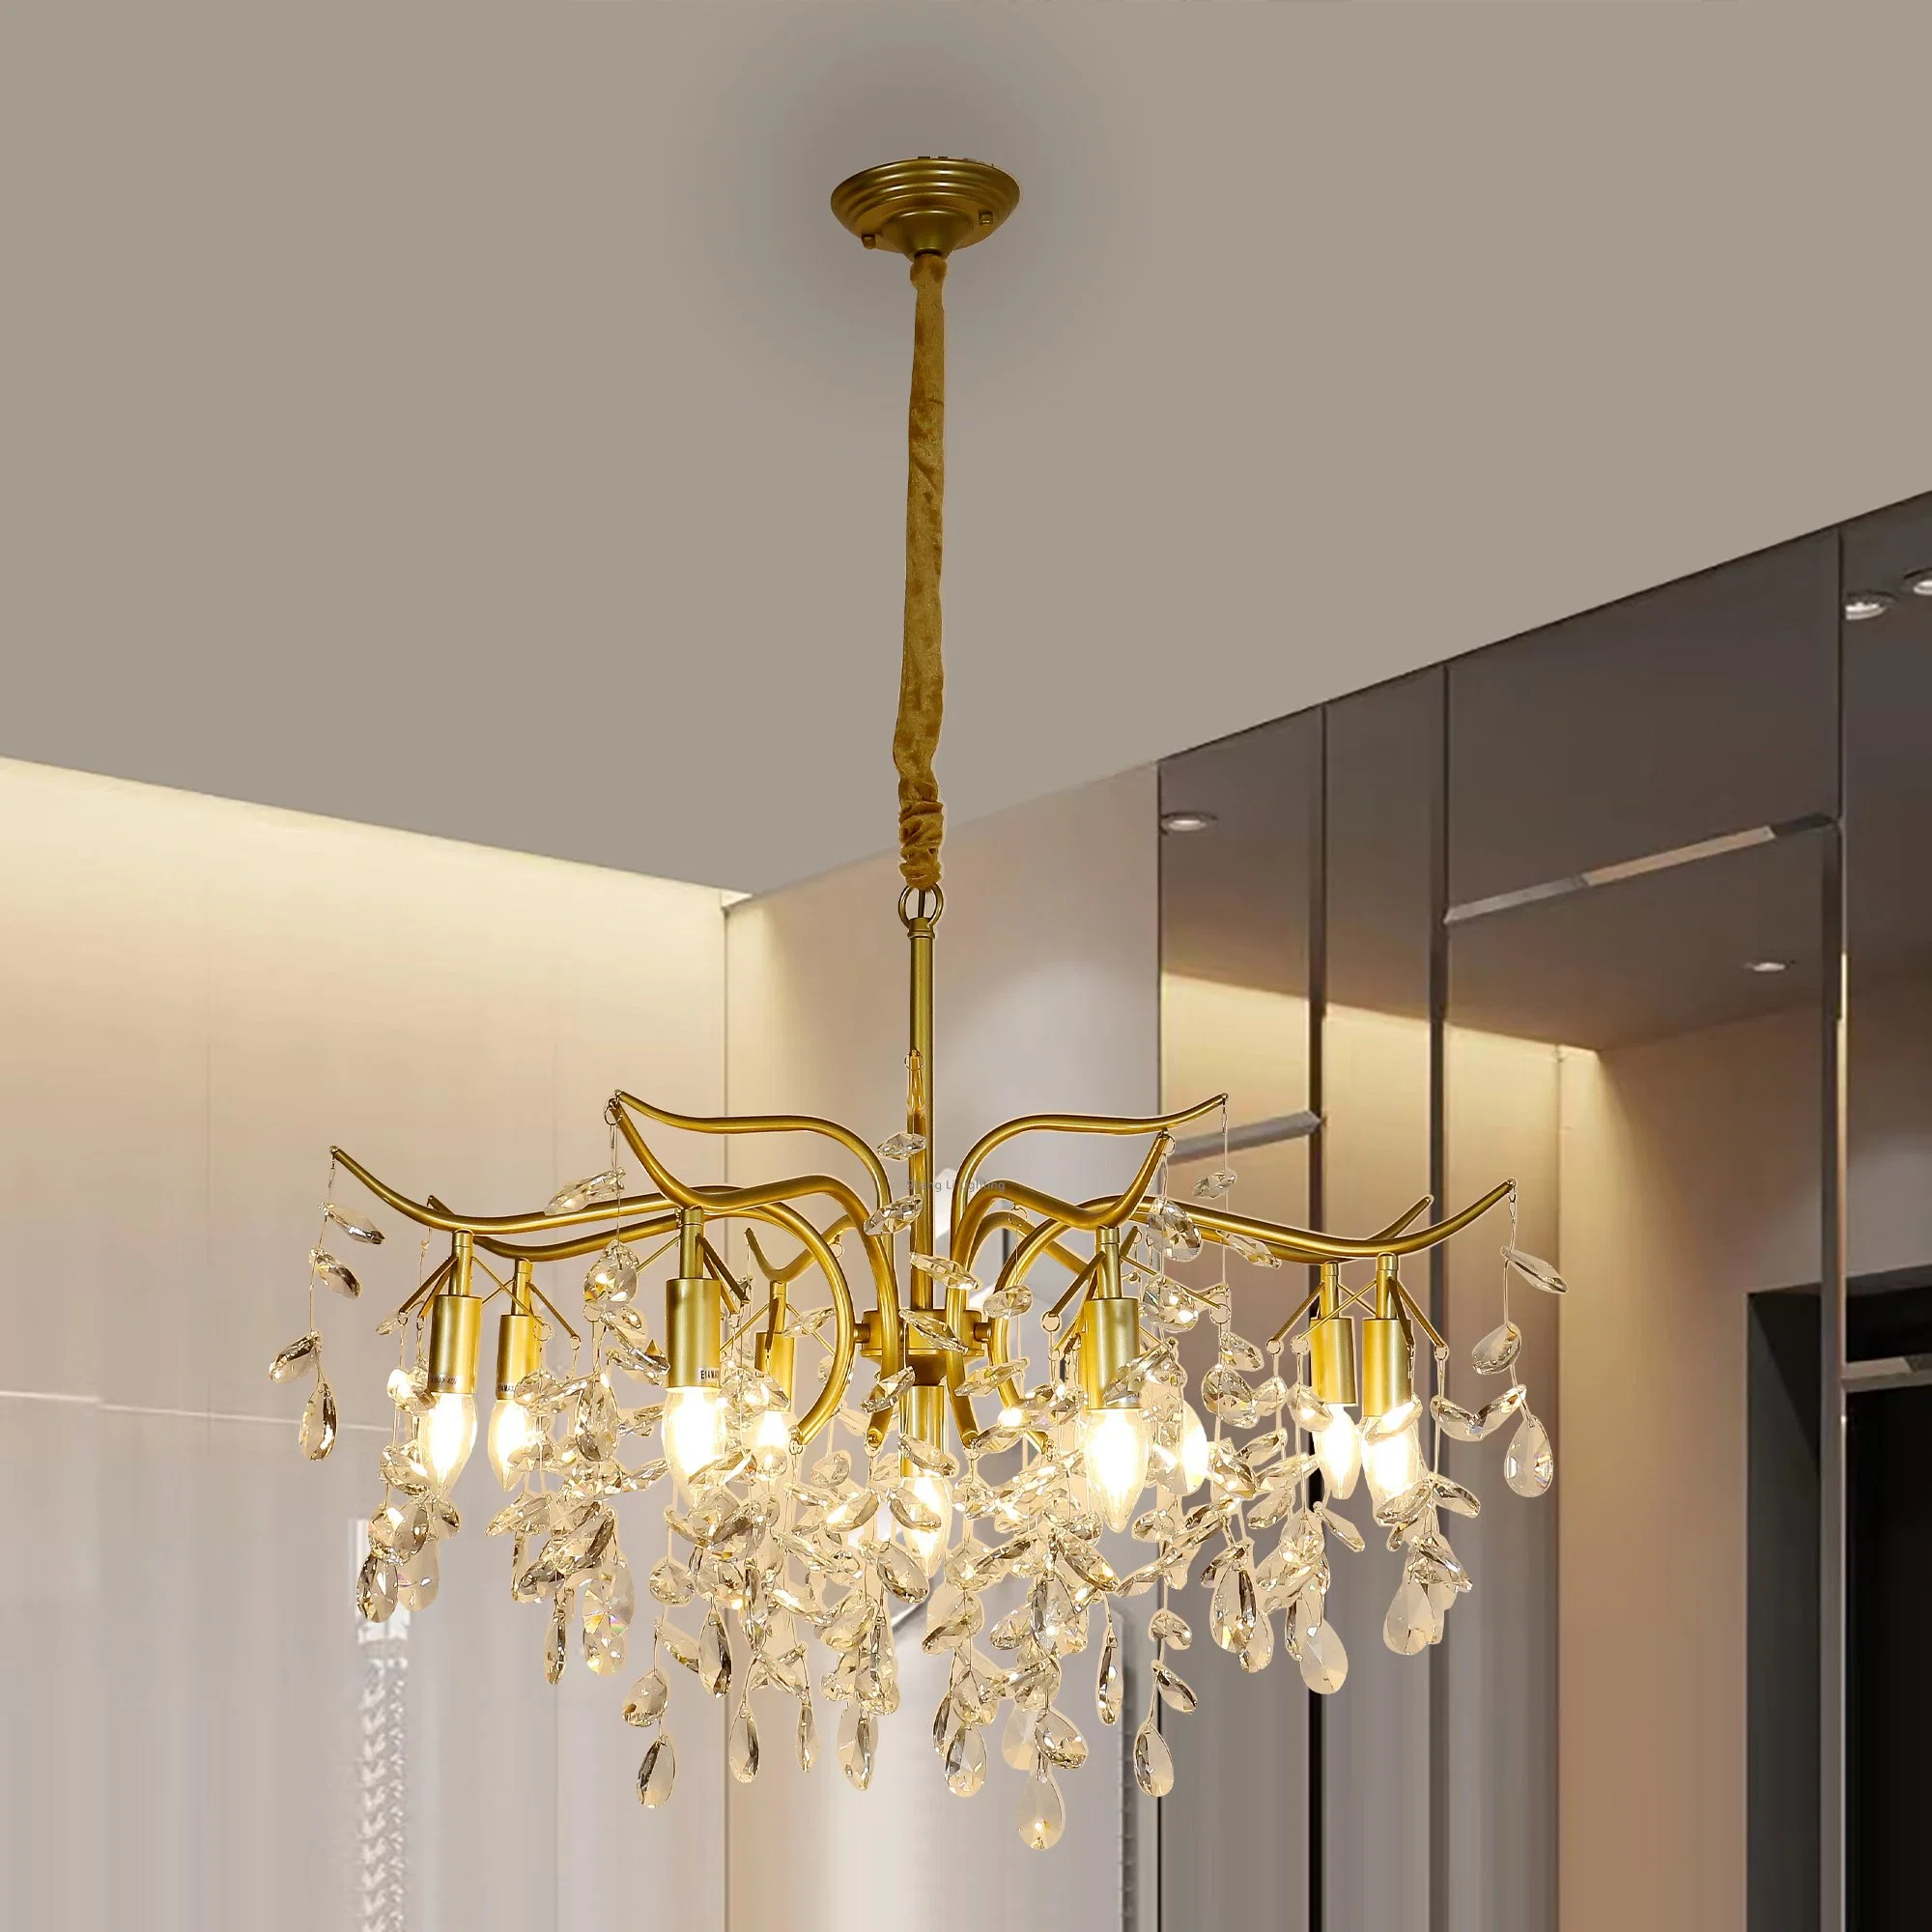 La luz de la luz de lámpara de araña de cristal americanos de lujo sencillo moderno francés europeo Salón Dormitorio Lámpara las lámparas de la rama del arte creativo de la luz colgante